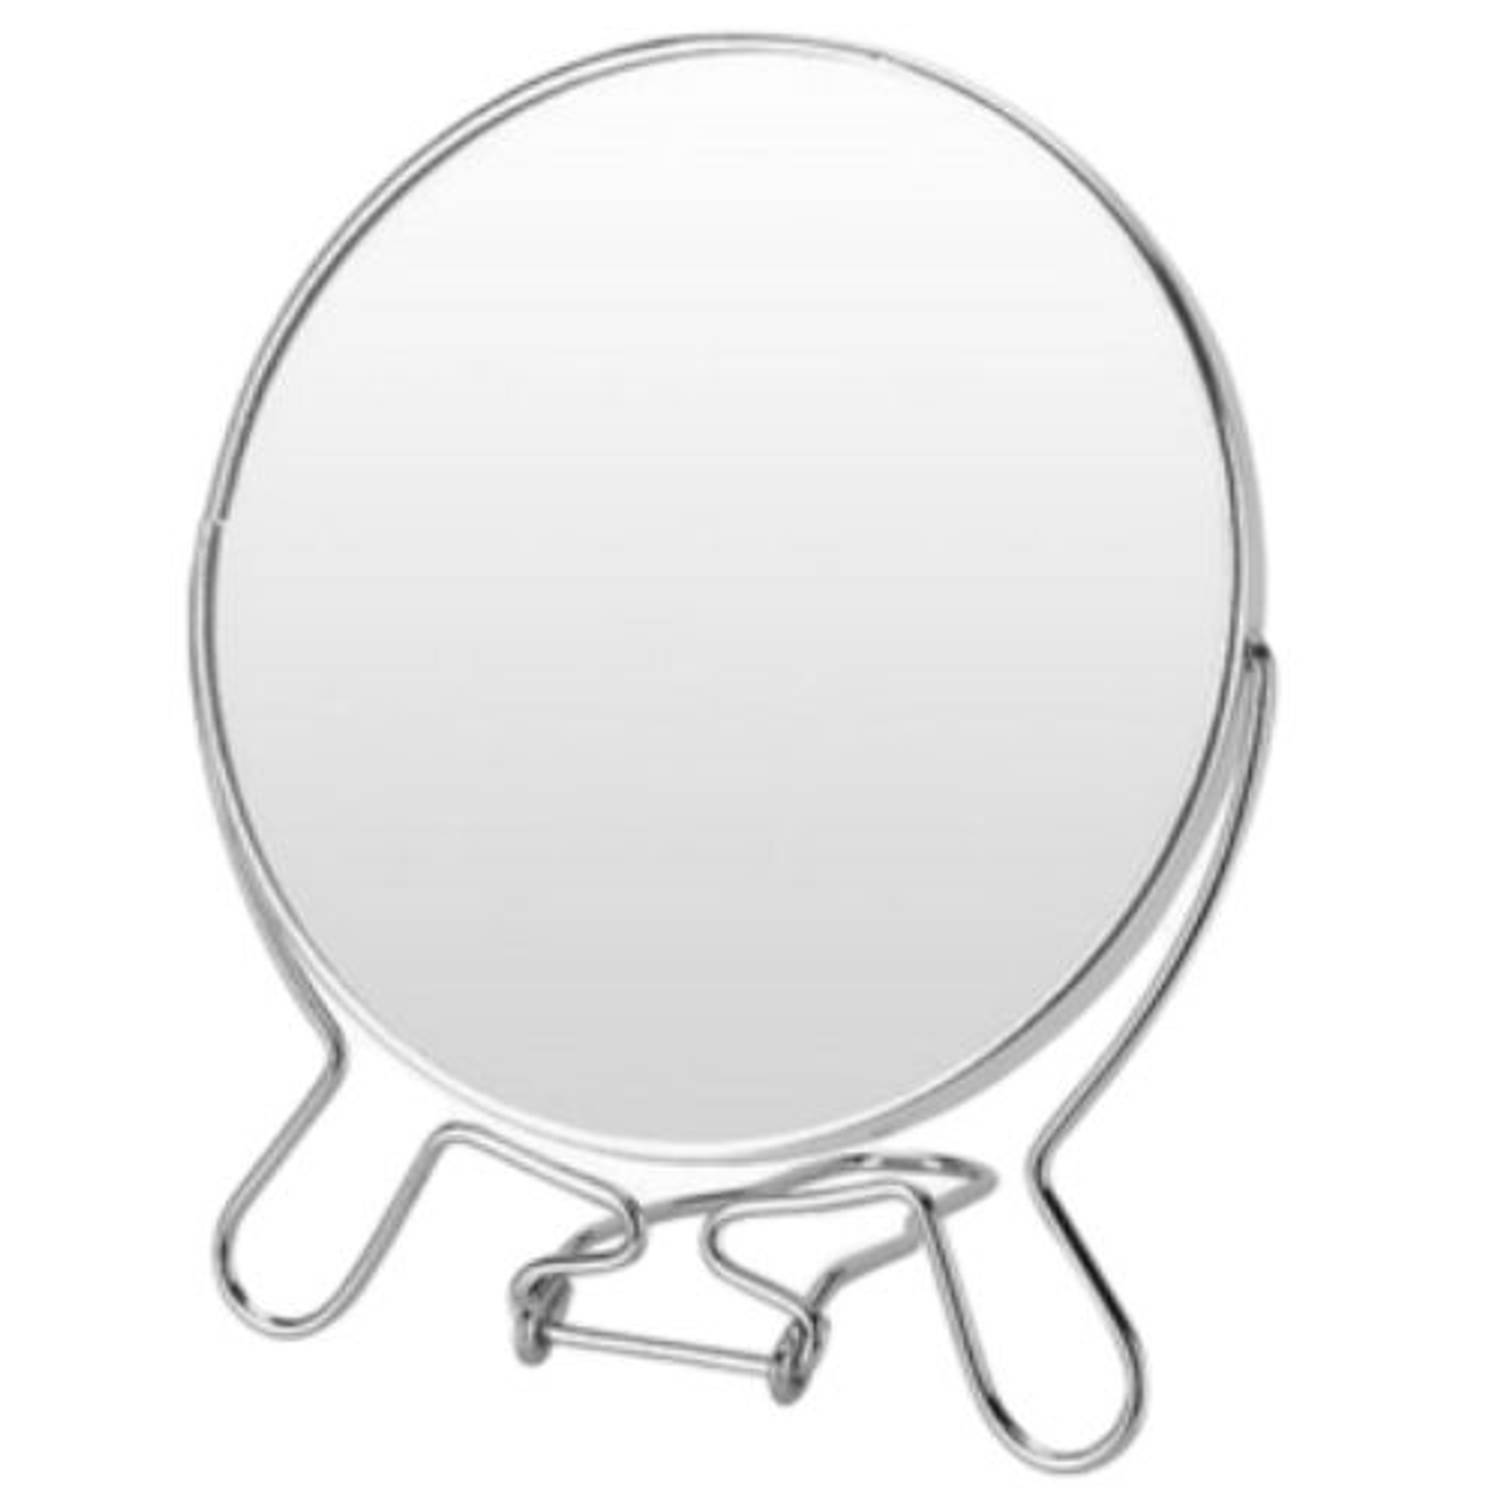 Orange85 Make-up spiegel - Tafel - Staand - 2x vergroting - Scheerspiegel - Cosmetica Draagbaar - Metaal | Blokker